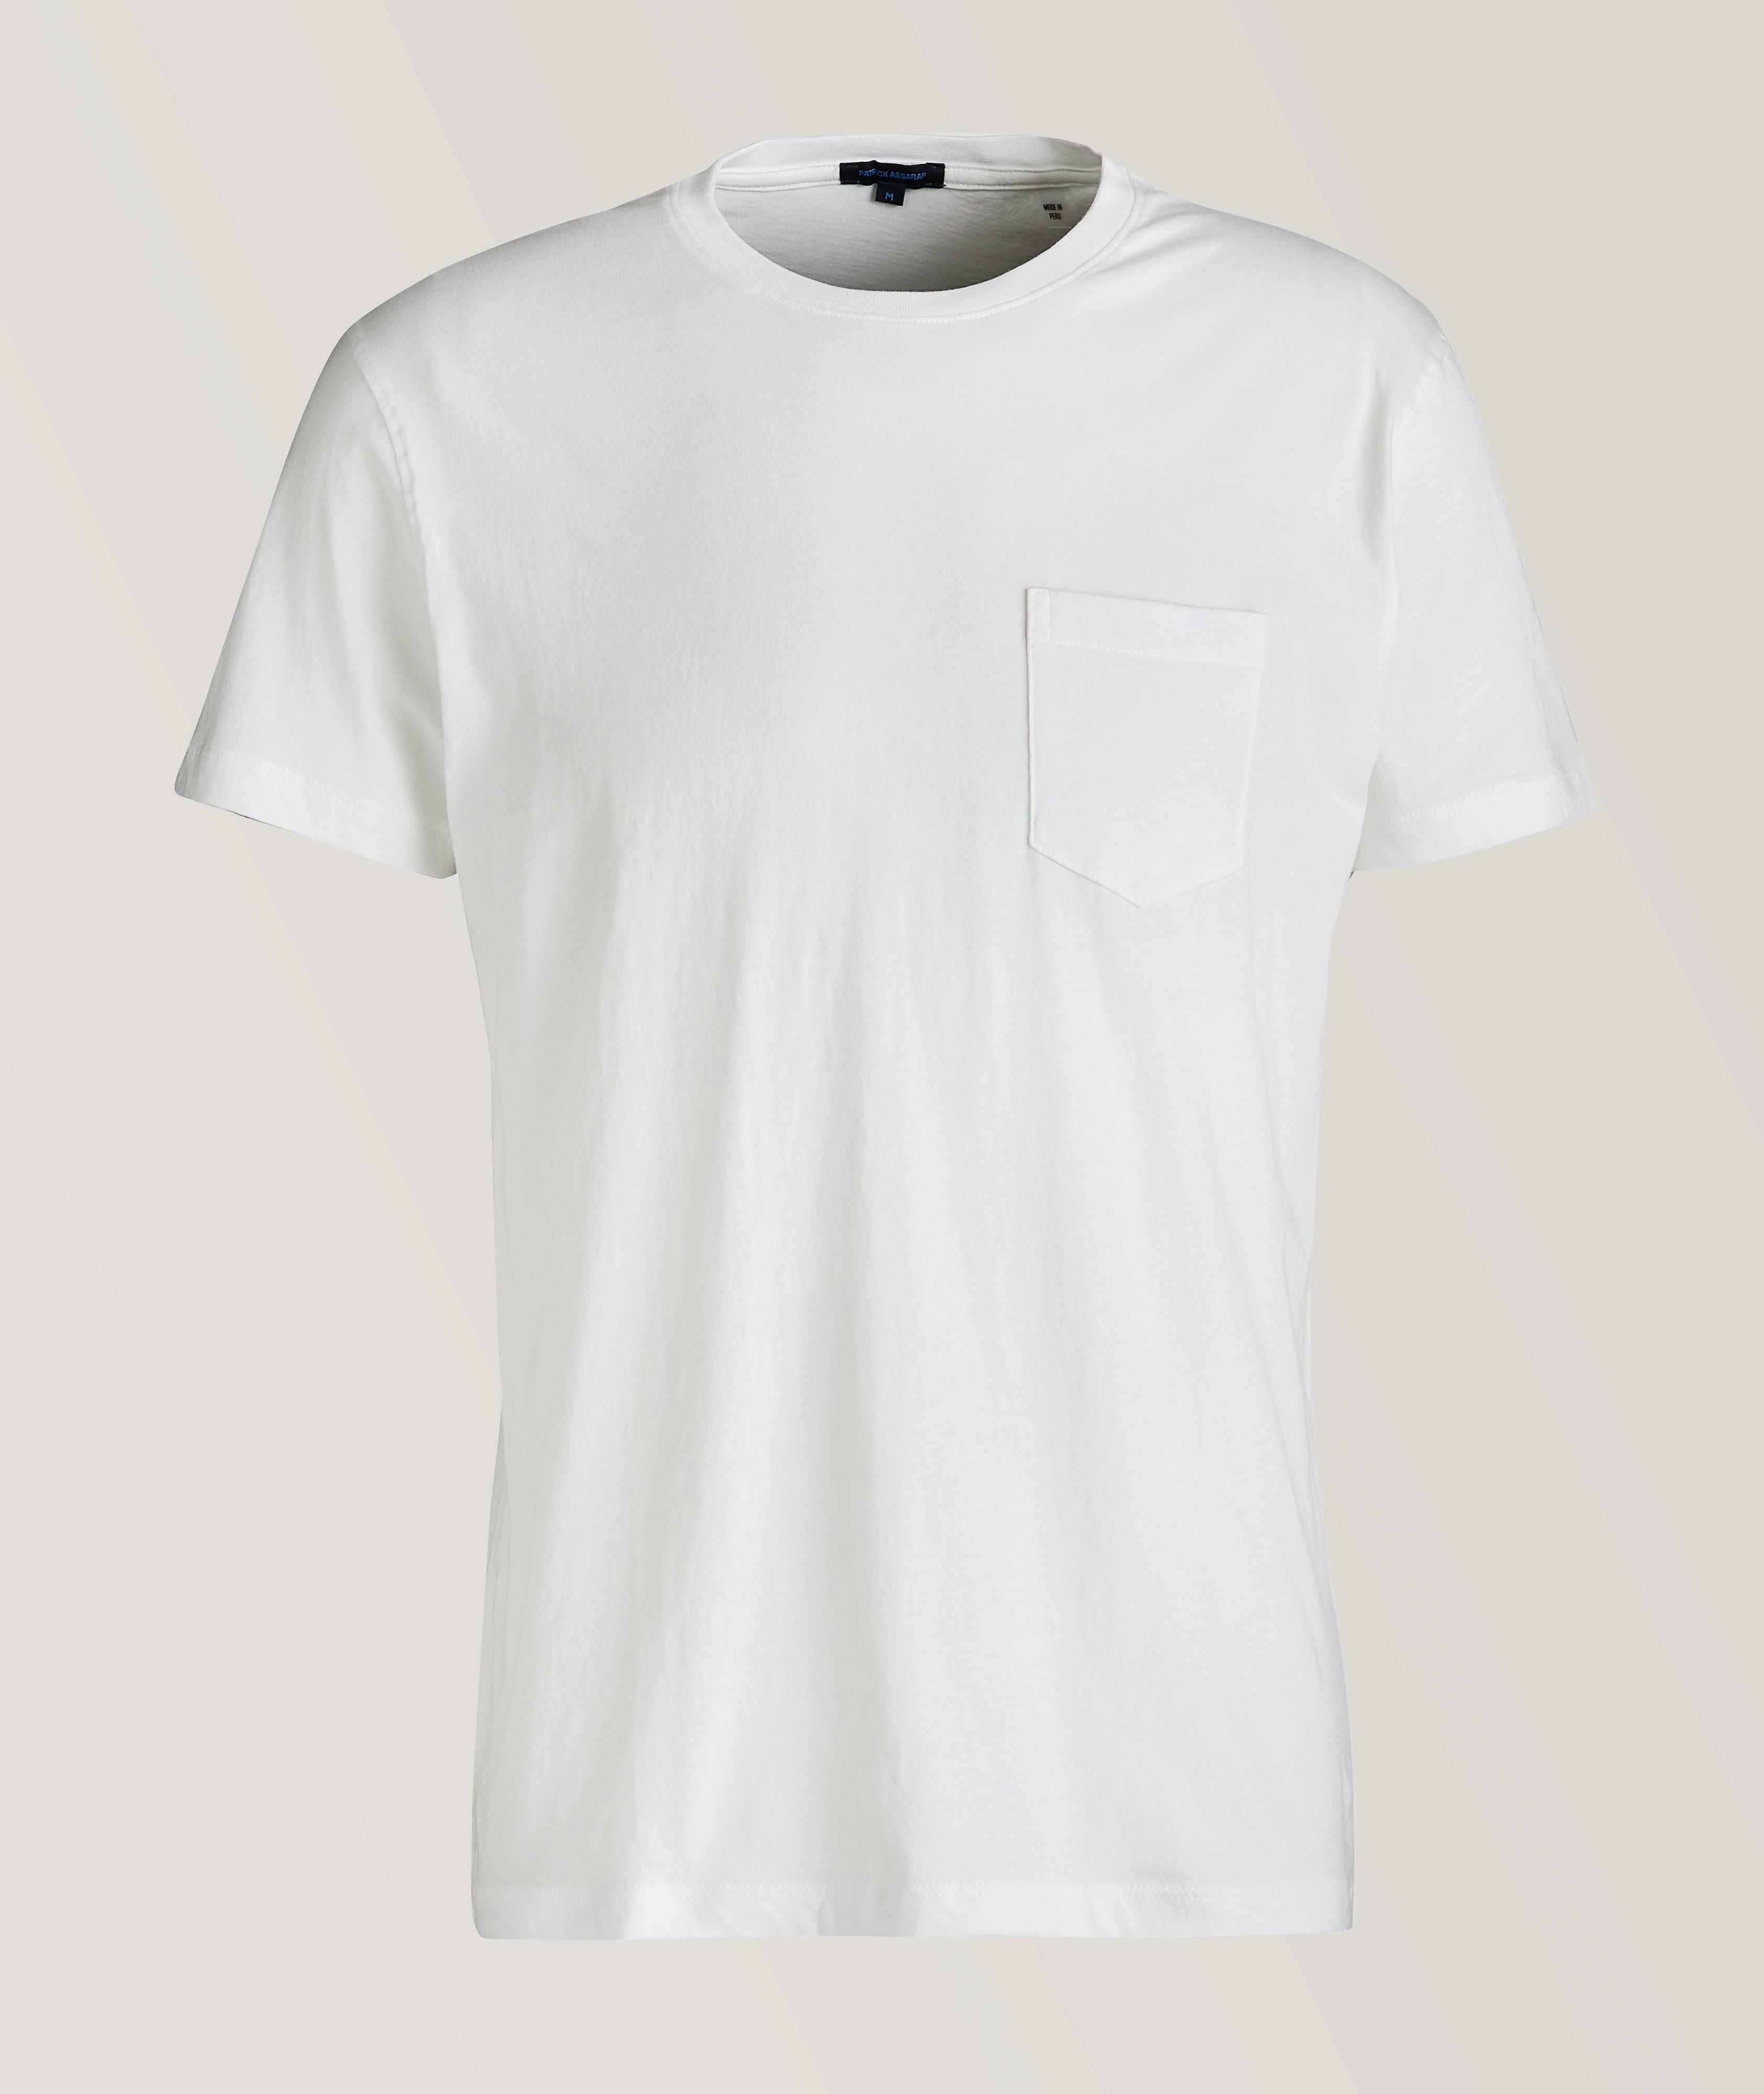 T-shirt en coton pima image 0